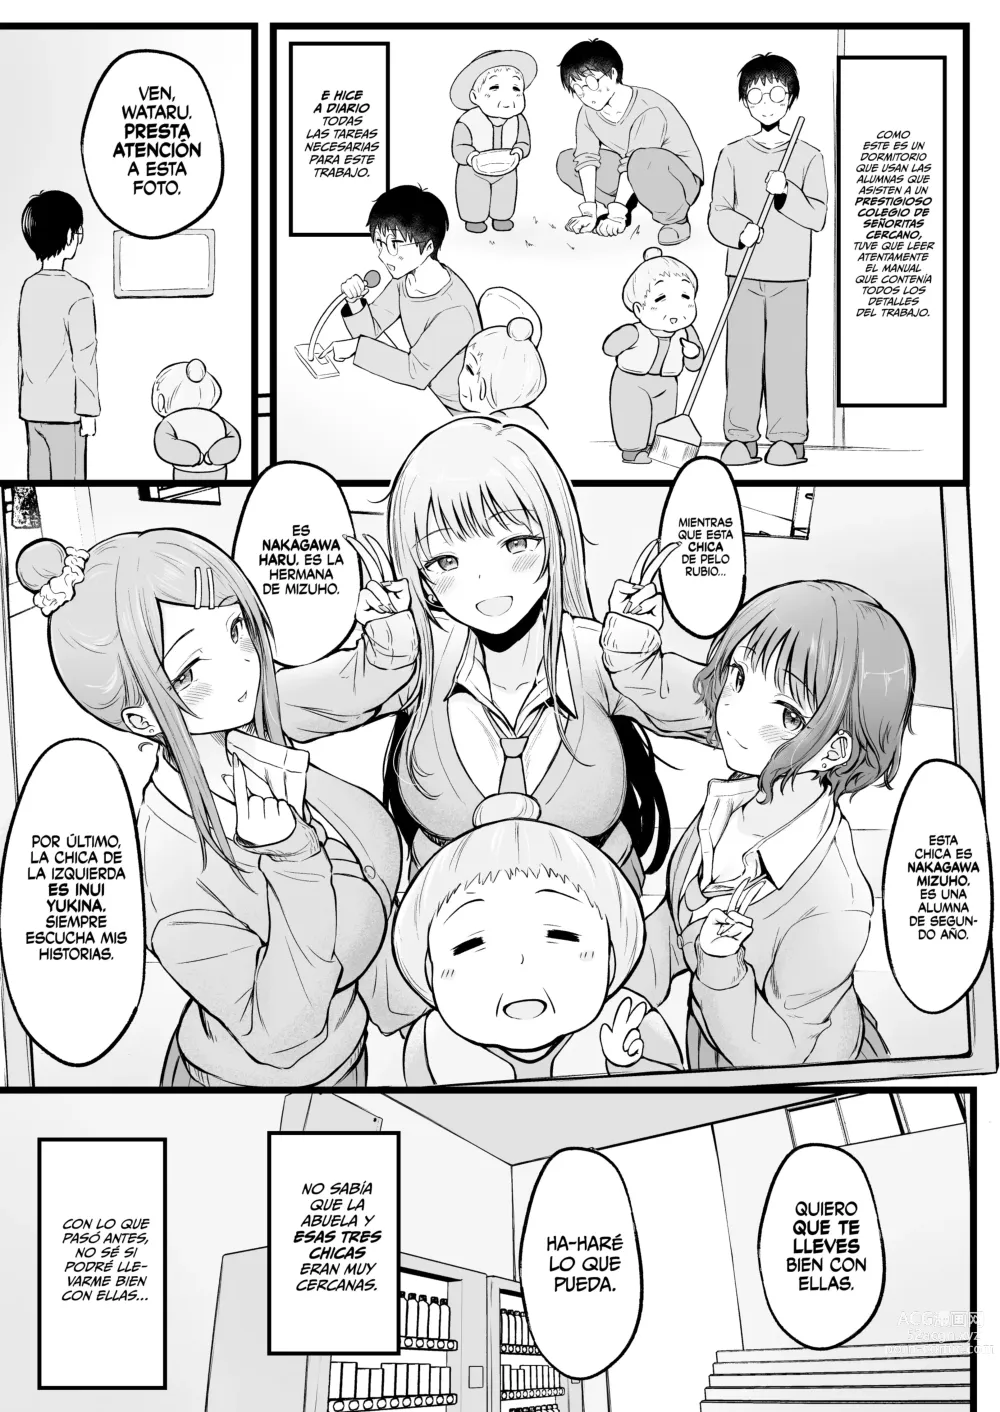 Page 7 of doujinshi Soy el Administrador del Dormitorio de Chicas, Siendo Manipulado por las Chicas que Viven Ahí.